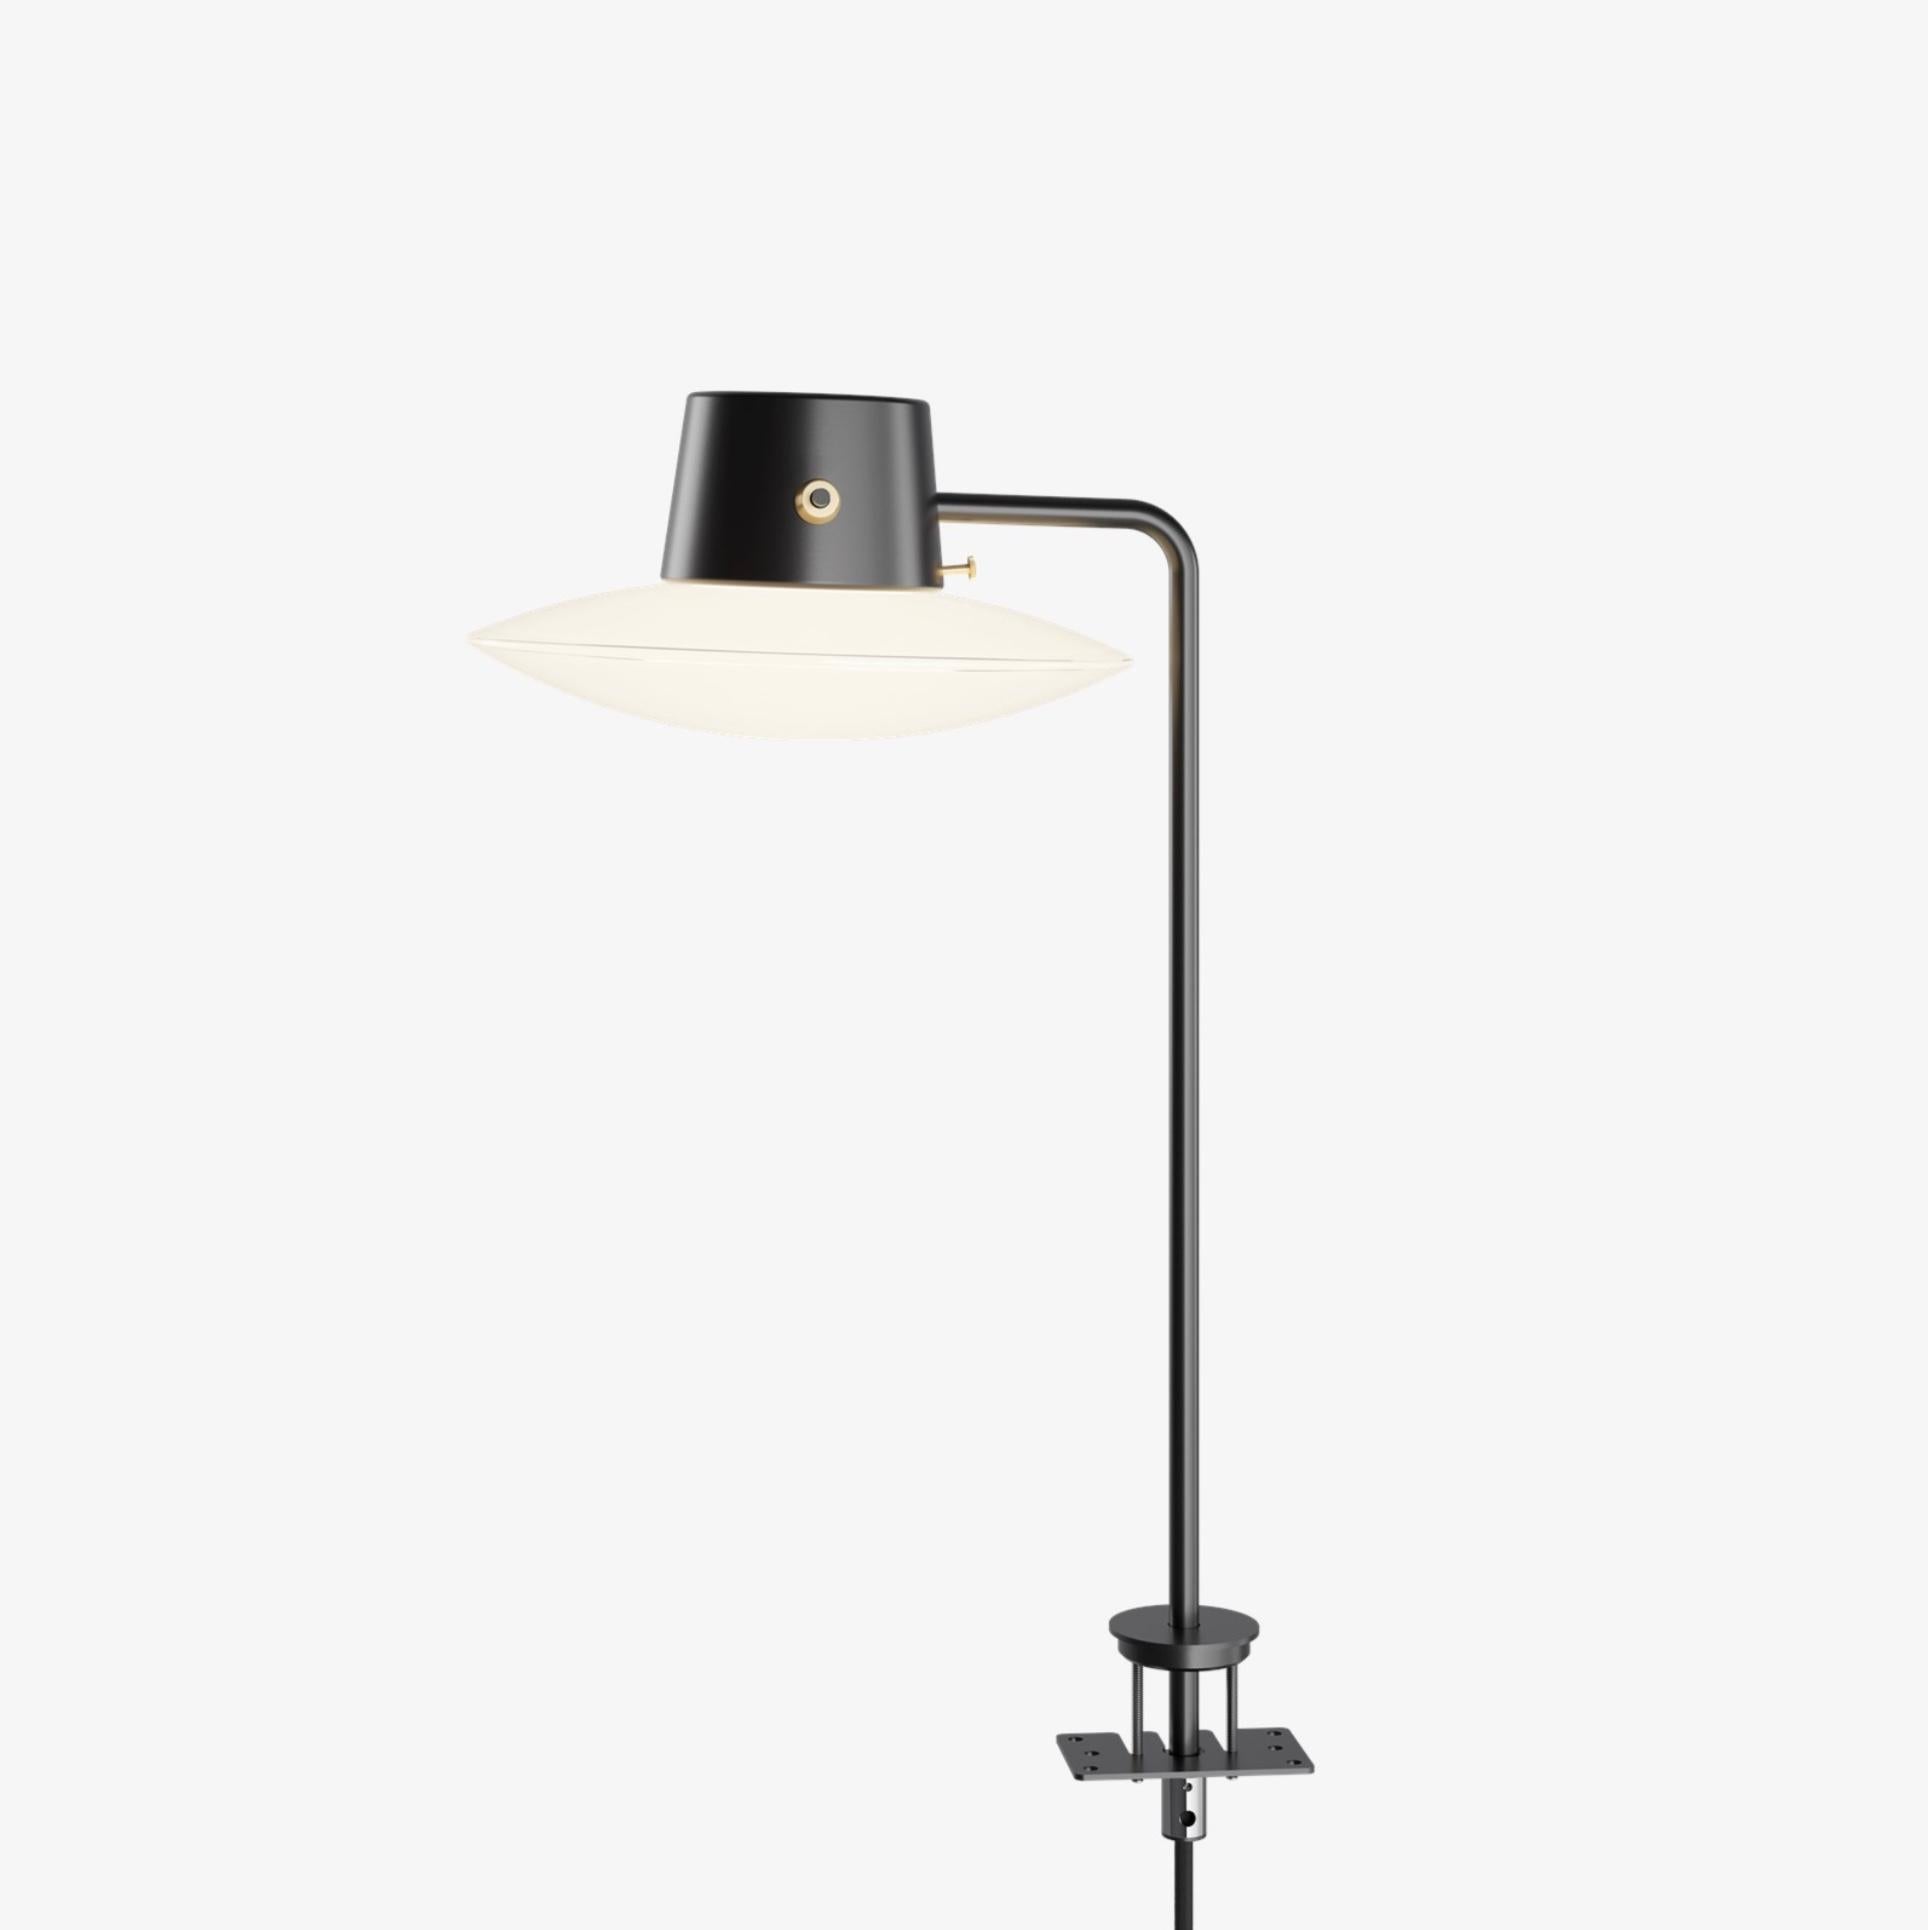 Lampe de table Arne Jacobsen AJ Oxford Pin 410mm en noir et opaline pour Louis Poulsen. Conçu en 1963, production actuelle.

La lampe de table AJ Oxford a une expression graphique épurée, qui reflète l'architecture du St Catherine's College, à